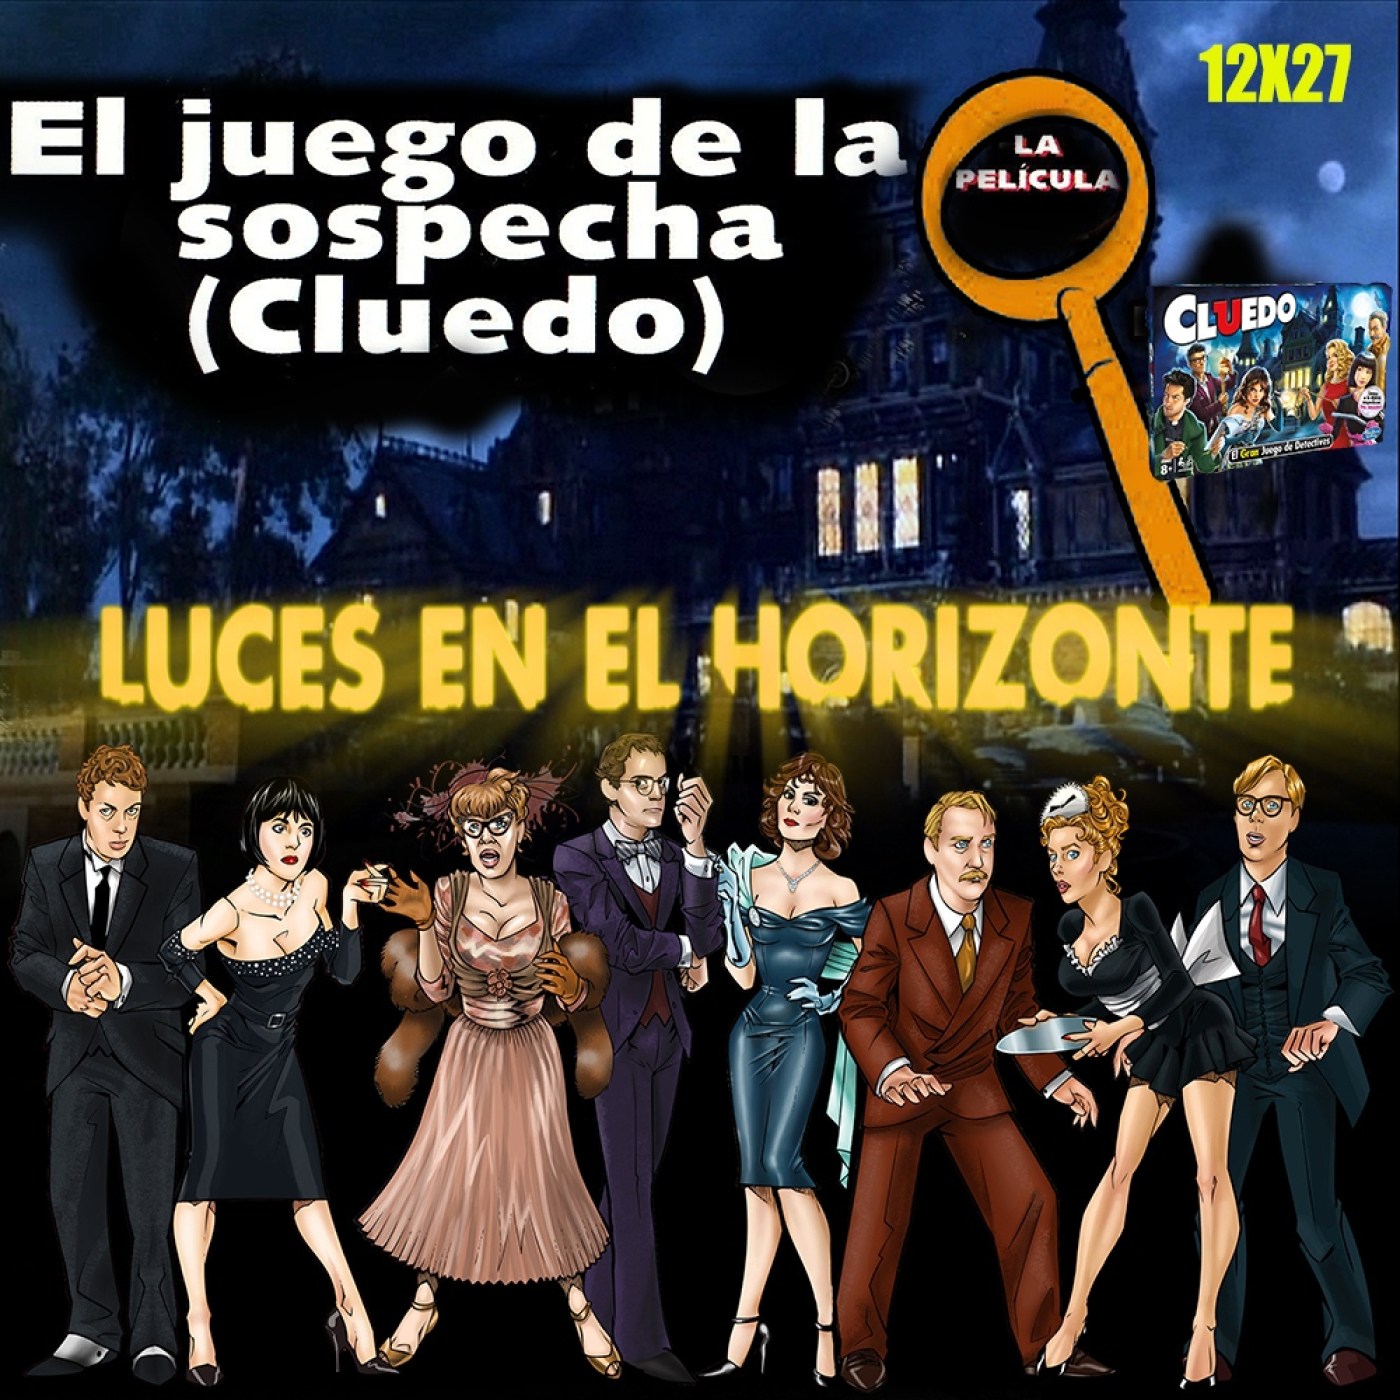 Cluedo, El juego de la sospecha - Luces en el Horizonte 12X27